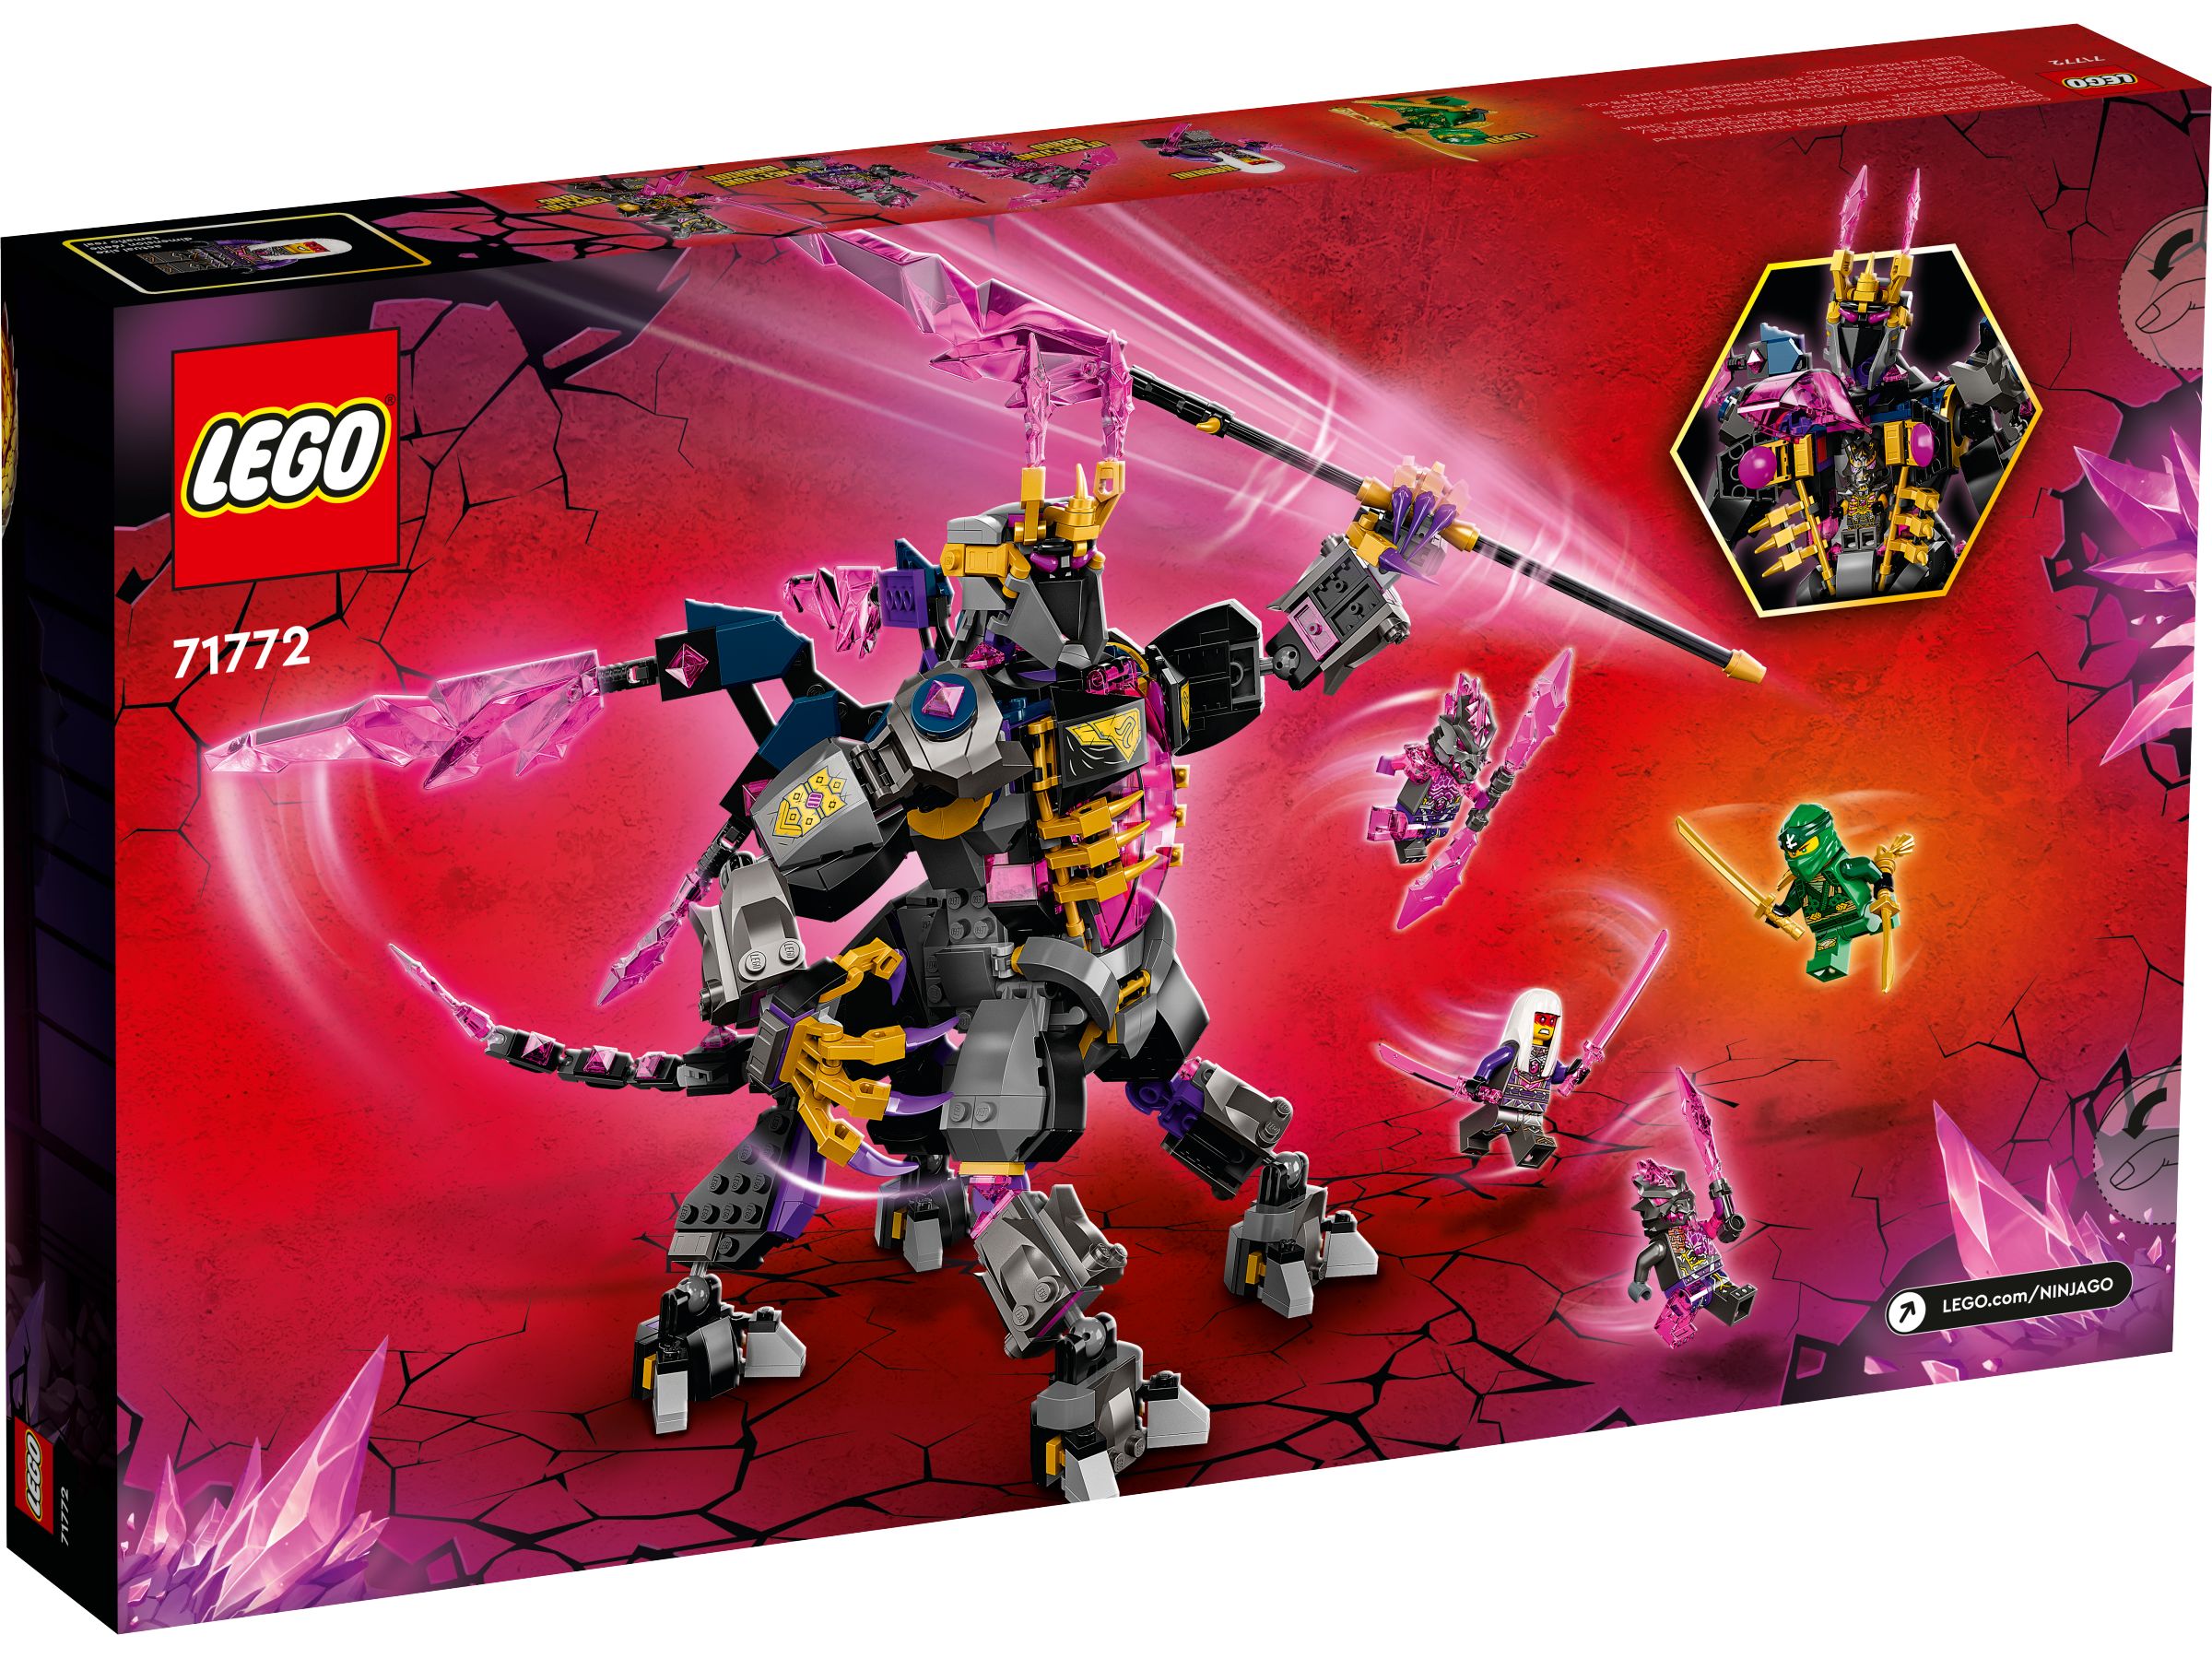 LEGO Ninjago 71772 Der Kristallkönig LEGO_71772_alt4.jpg